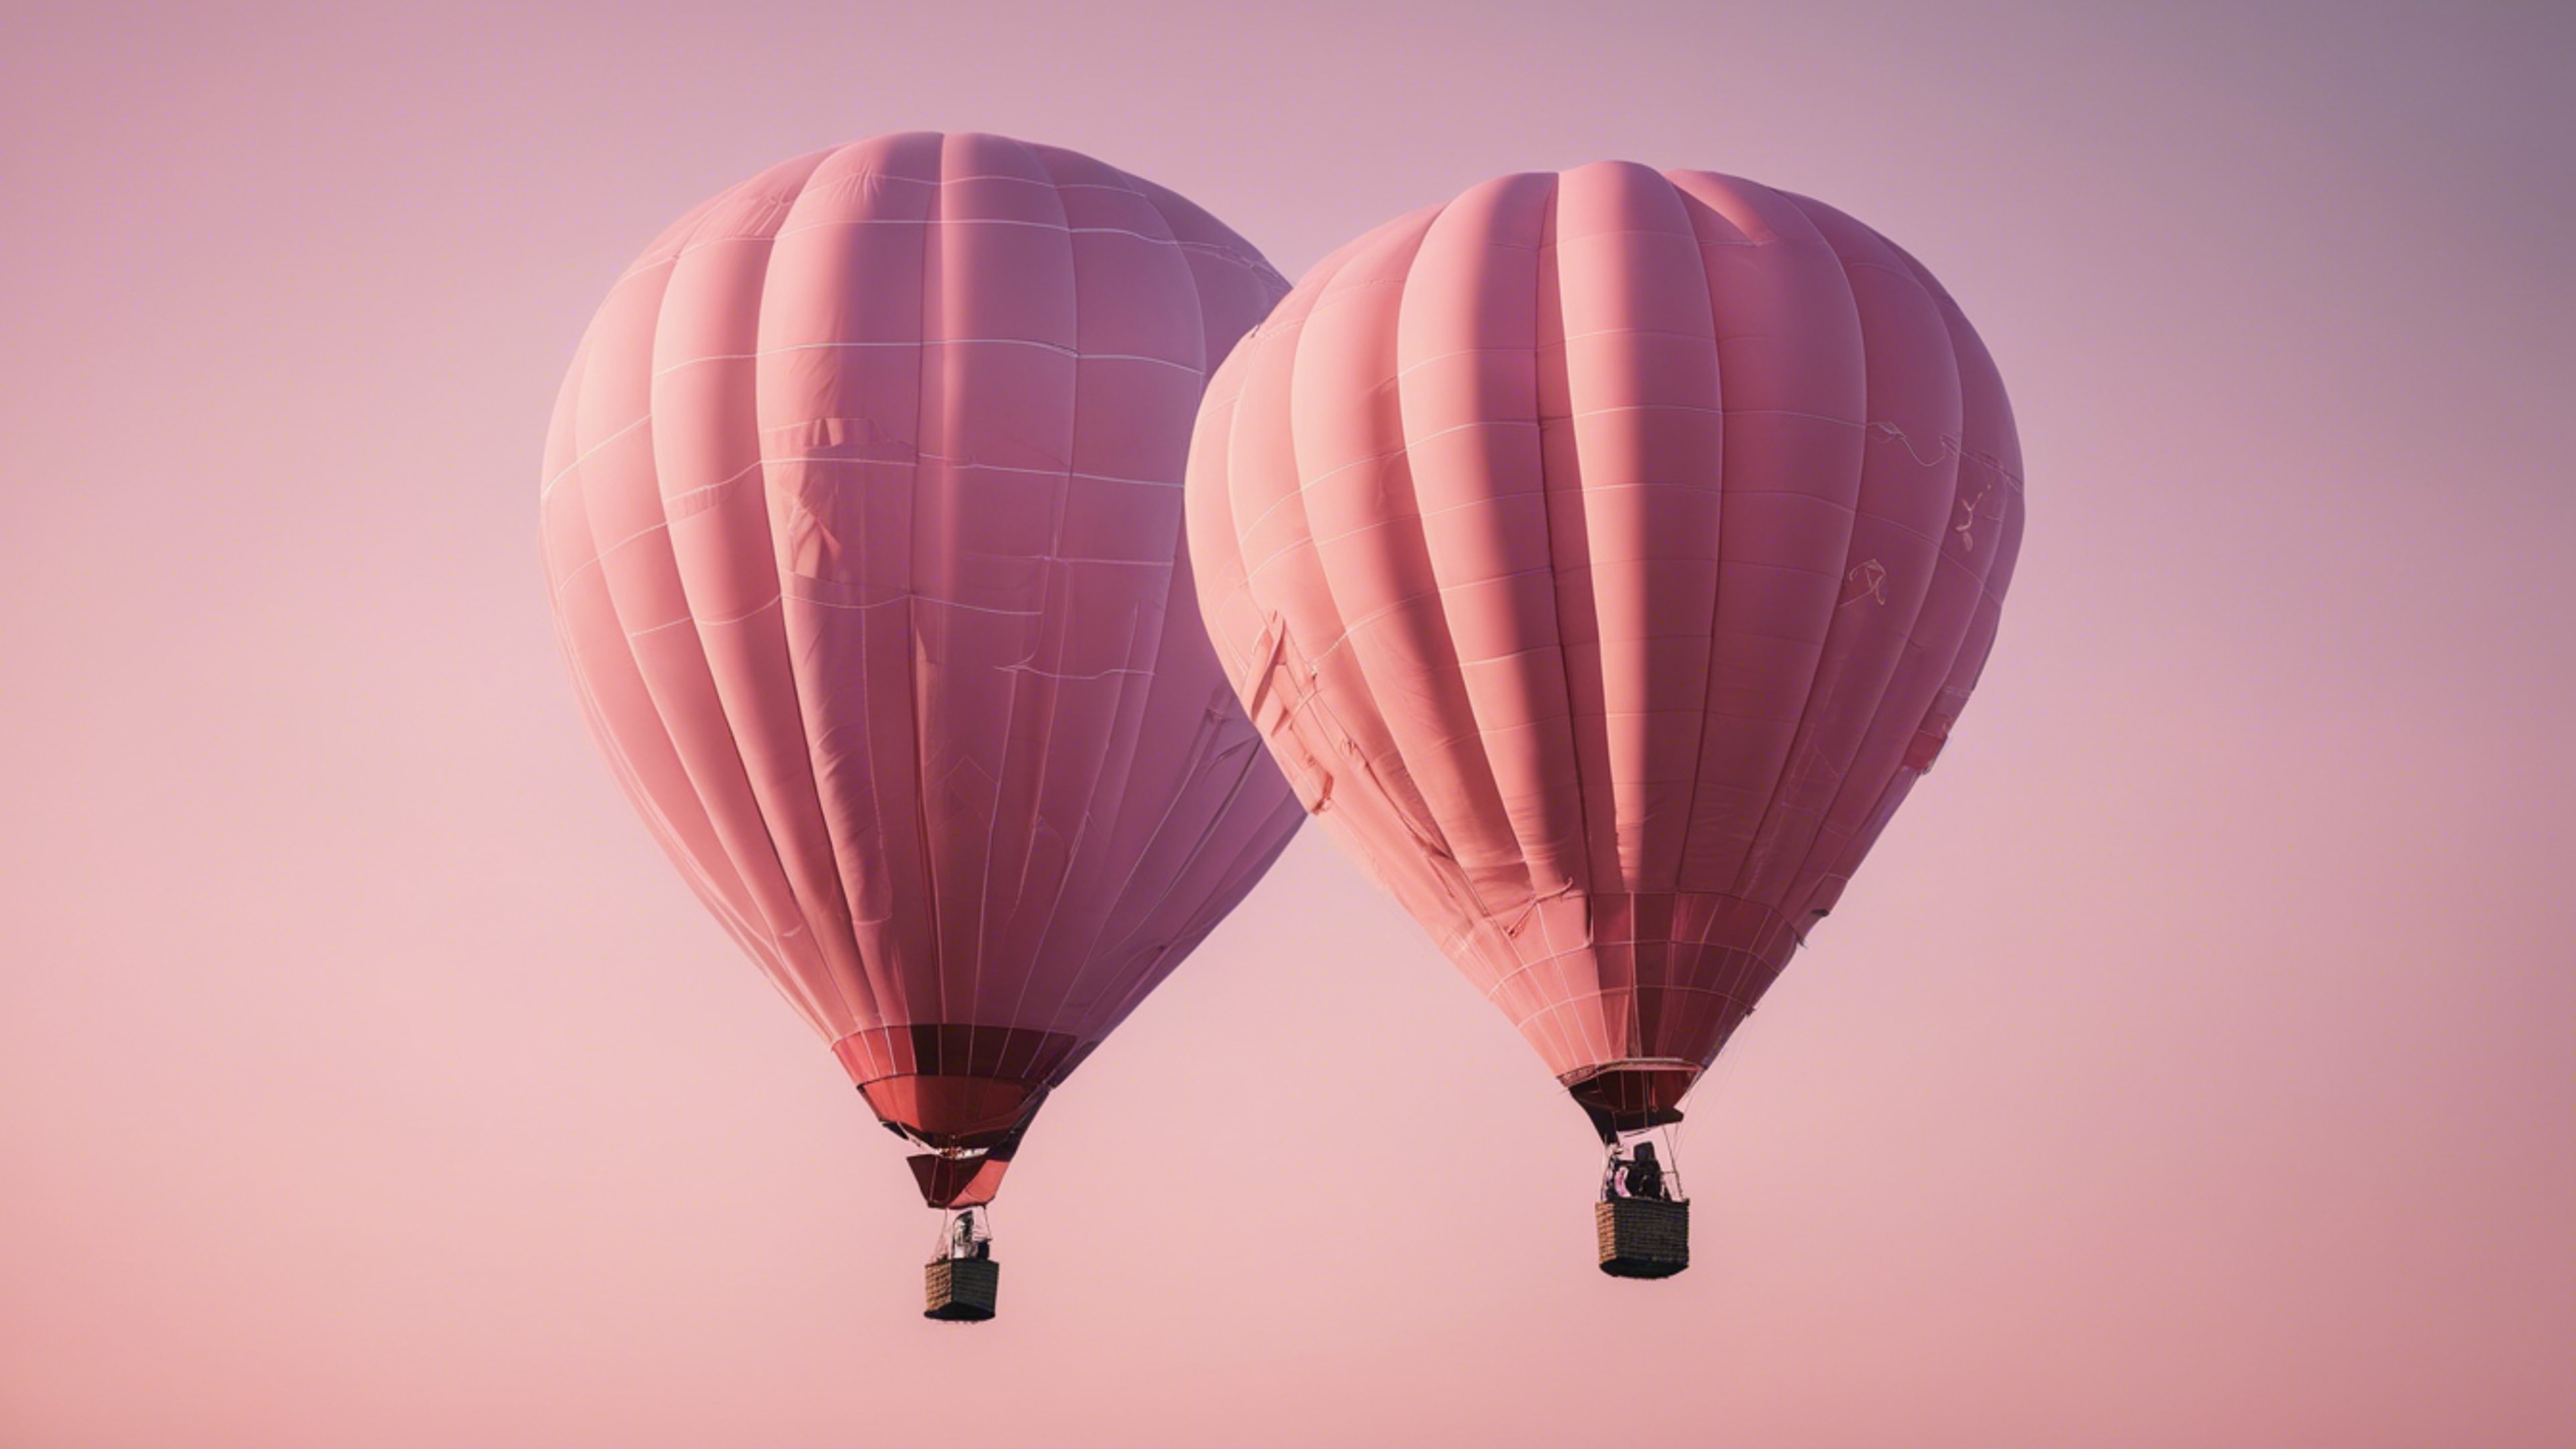 A light pink hot air balloon floating across a clear sky after sunrise. Kertas dinding[de0e3537891a4cb8b964]